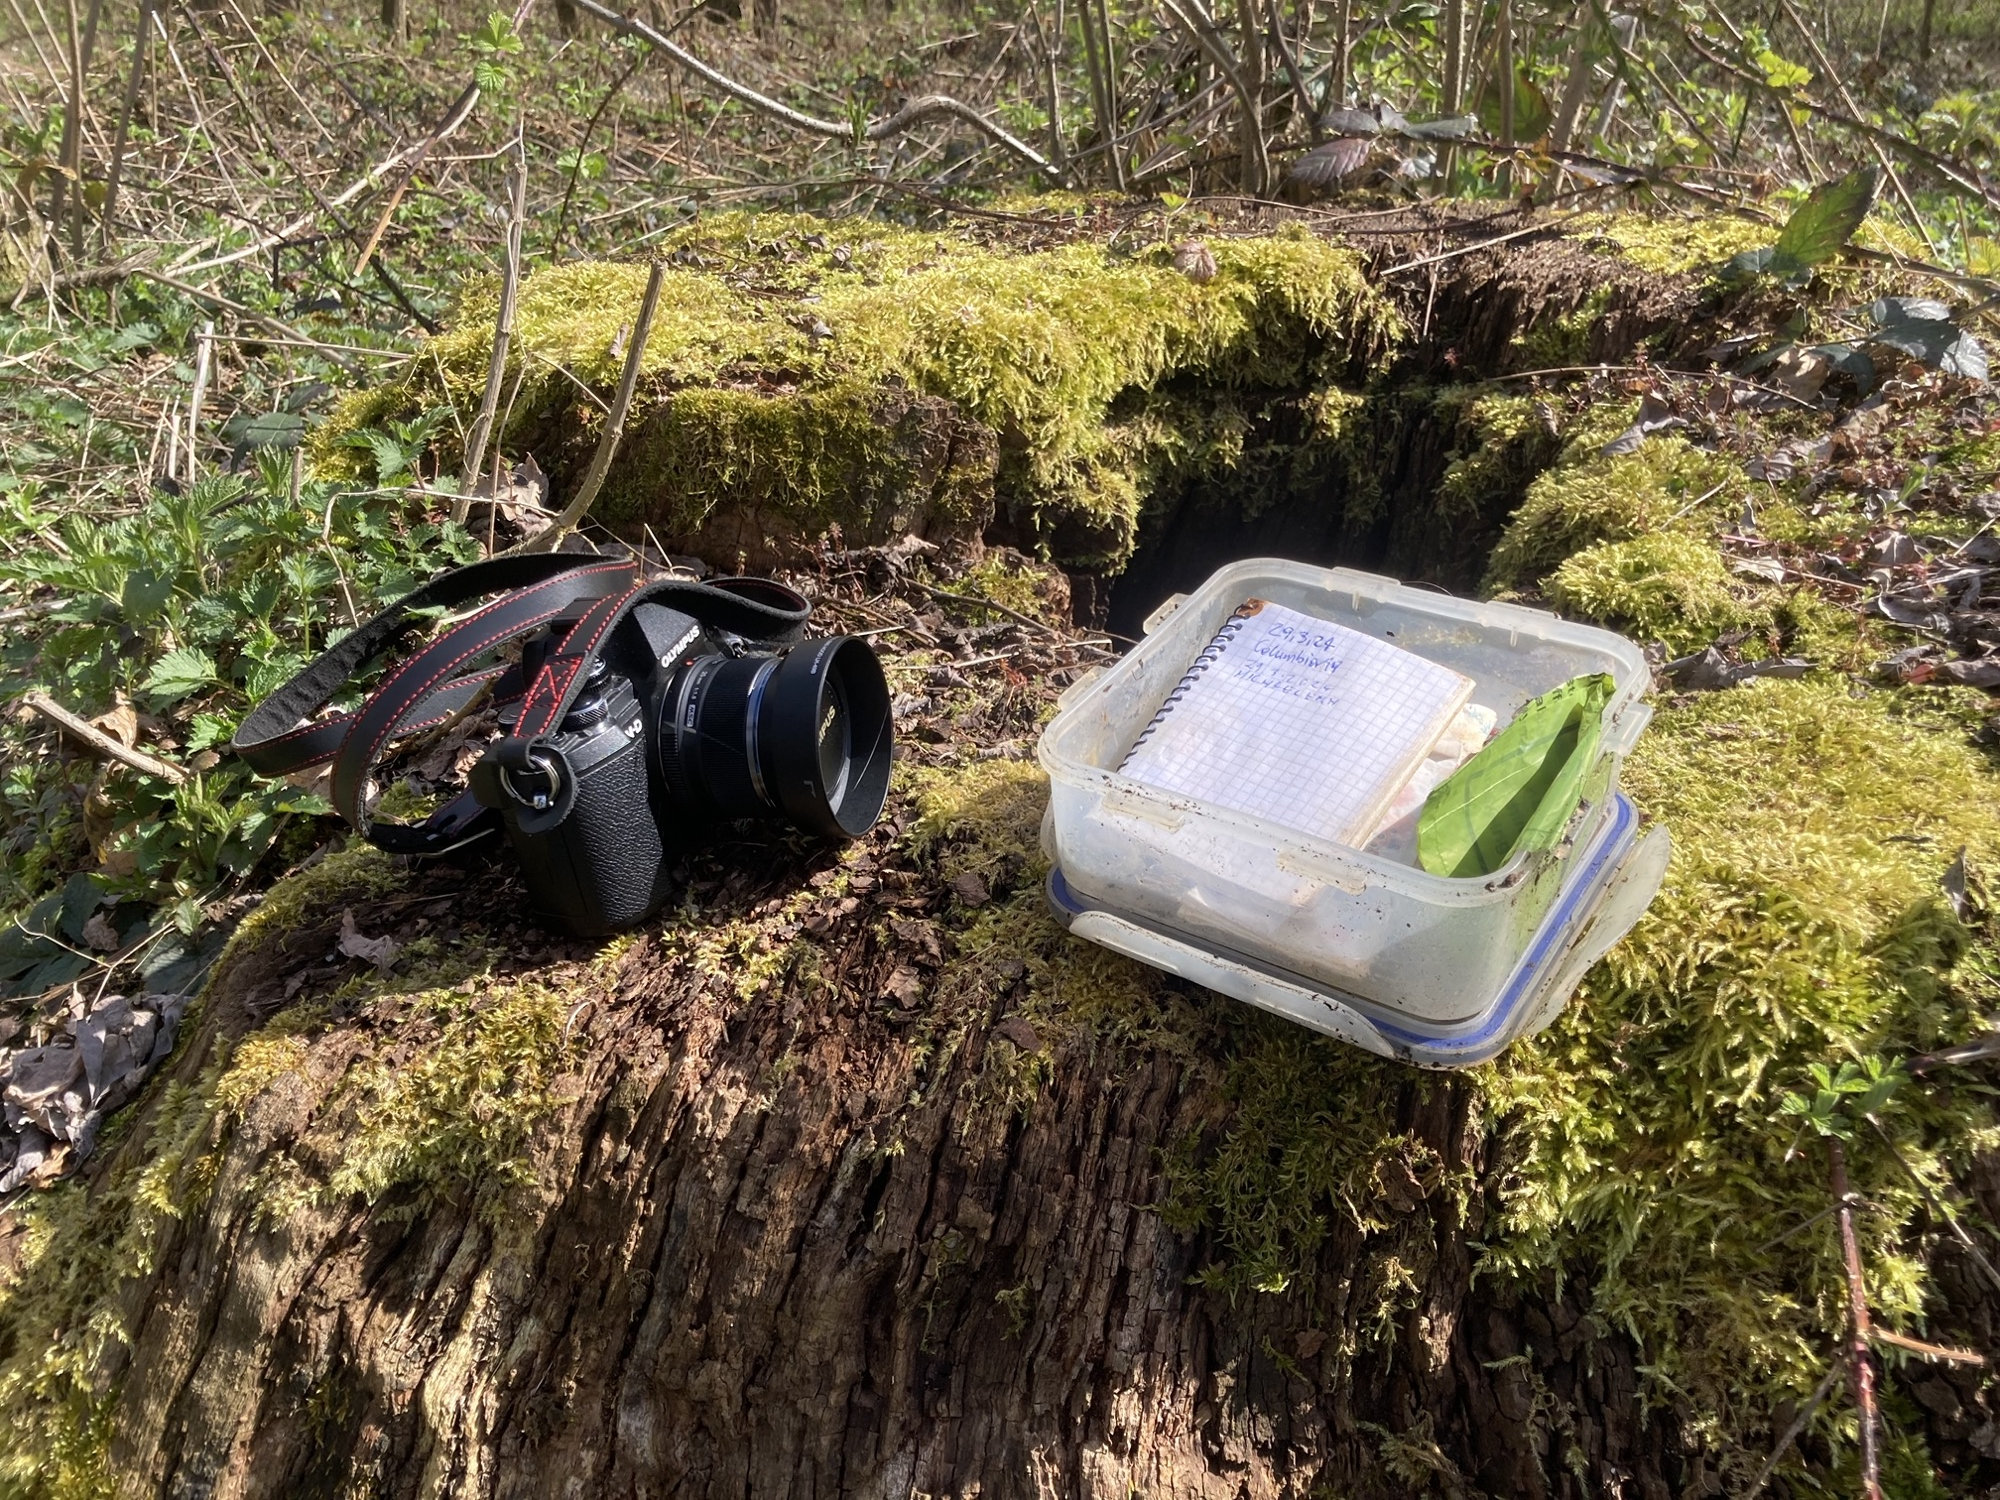 auf einem Baumstumpf liegt eine Digitalkamera und daneben ein Geocache (eine Plastikbox mit einem Logbuch darin)